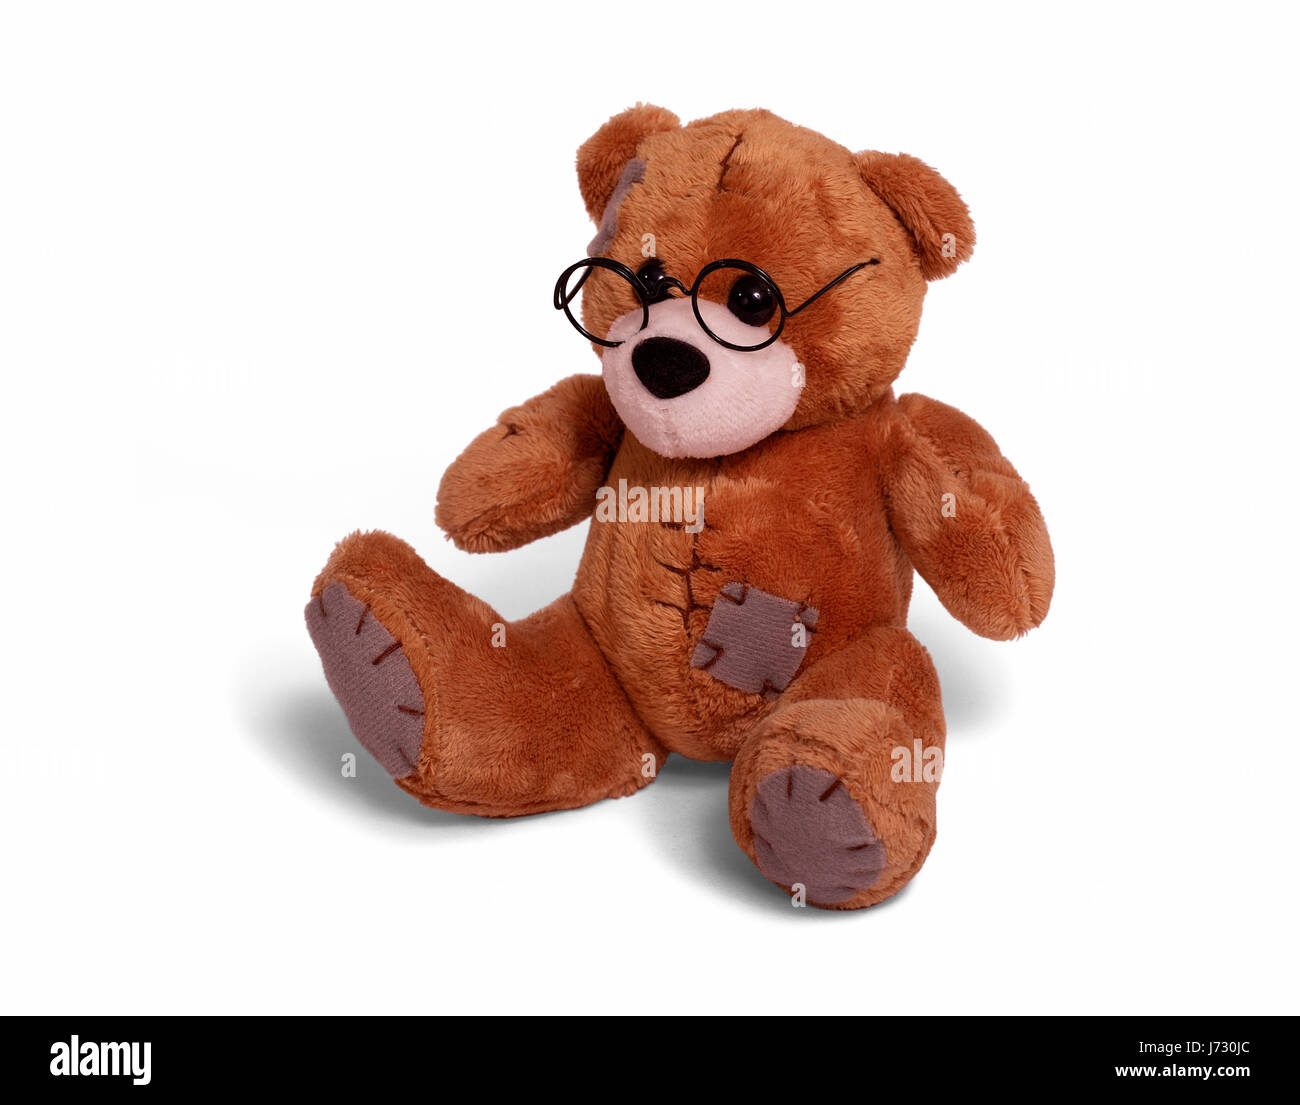 teddy bear wearing glasses